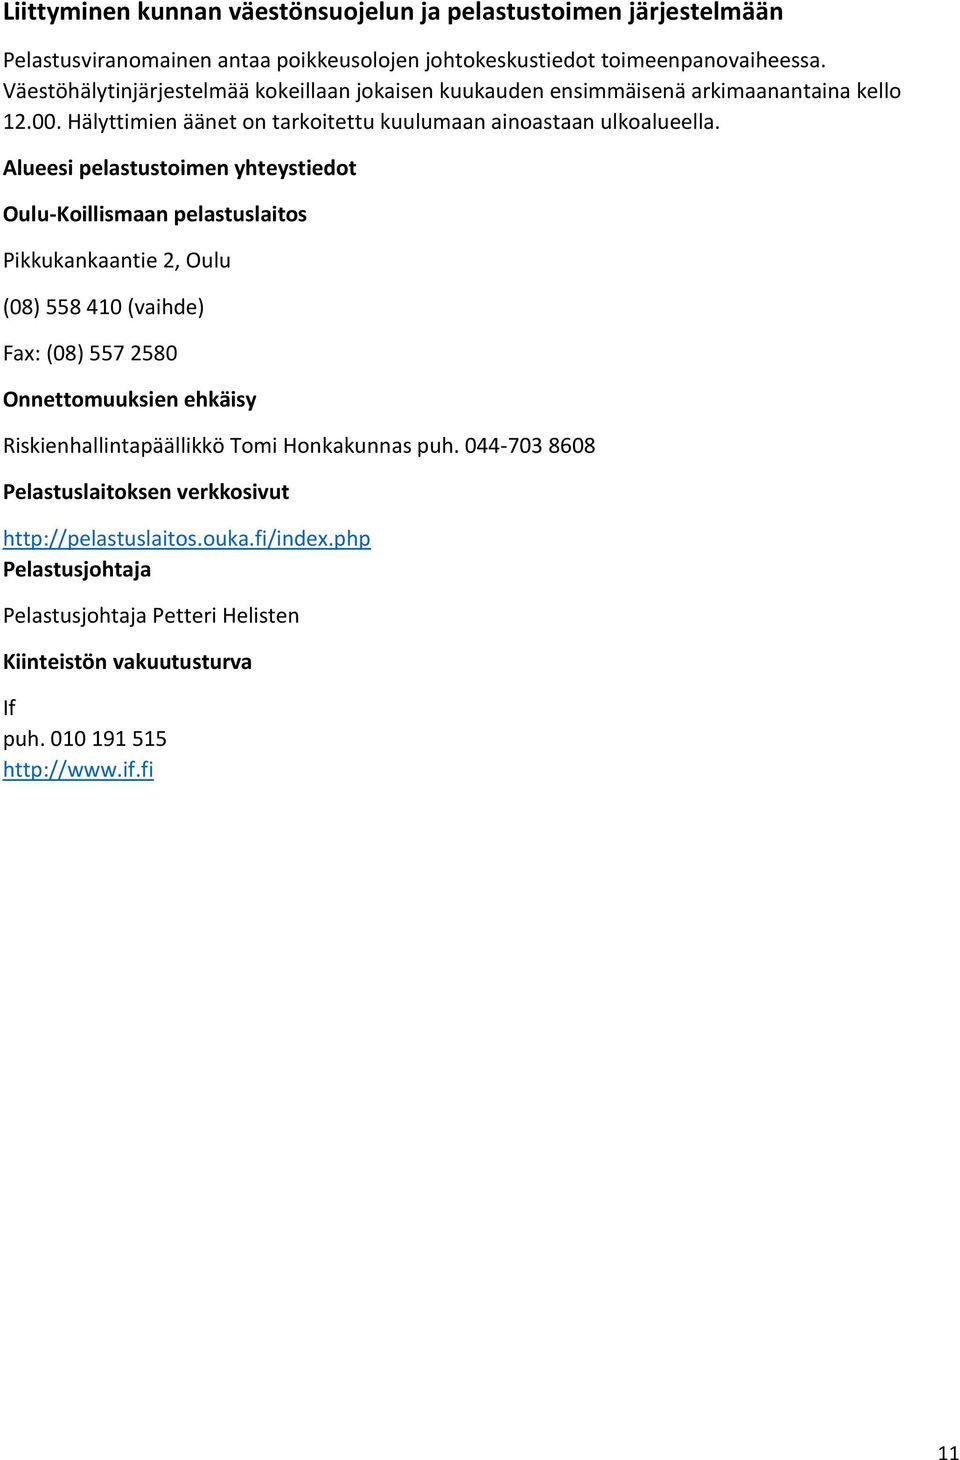 Alueesi pelastustoimen yhteystiedot Oulu-Koillismaan pelastuslaitos Pikkukankaantie 2, Oulu (08) 558 410 (vaihde) Fax: (08) 557 2580 Onnettomuuksien ehkäisy